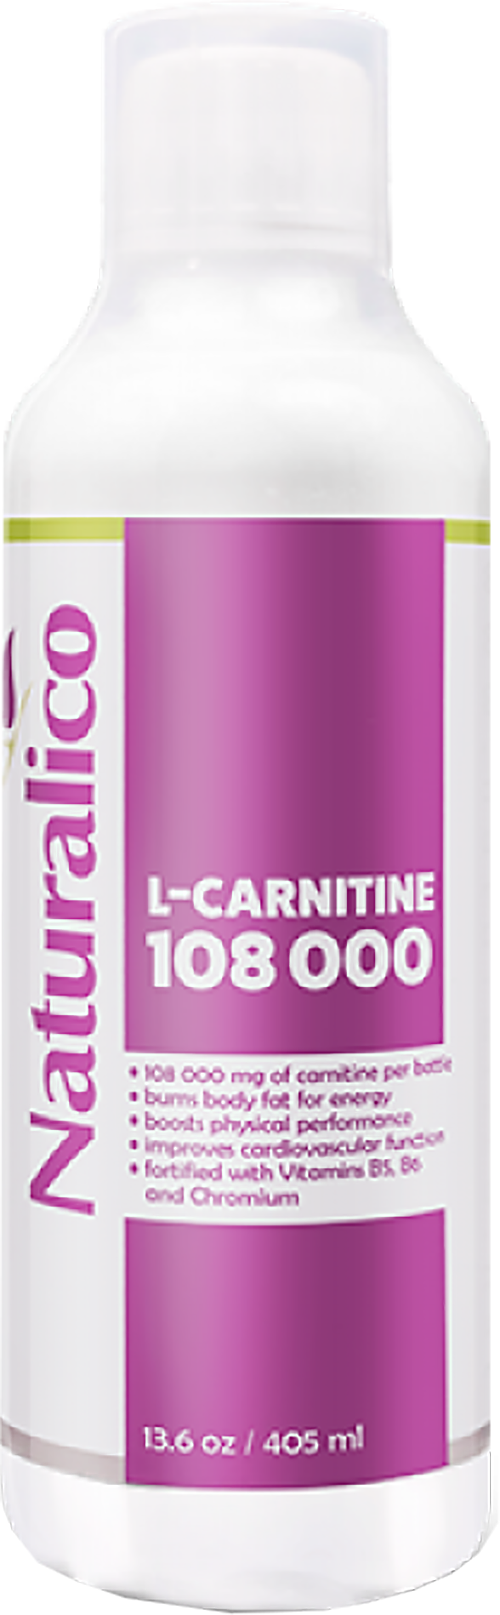 L-Carnitine 108 000 - BadiZdrav.BG